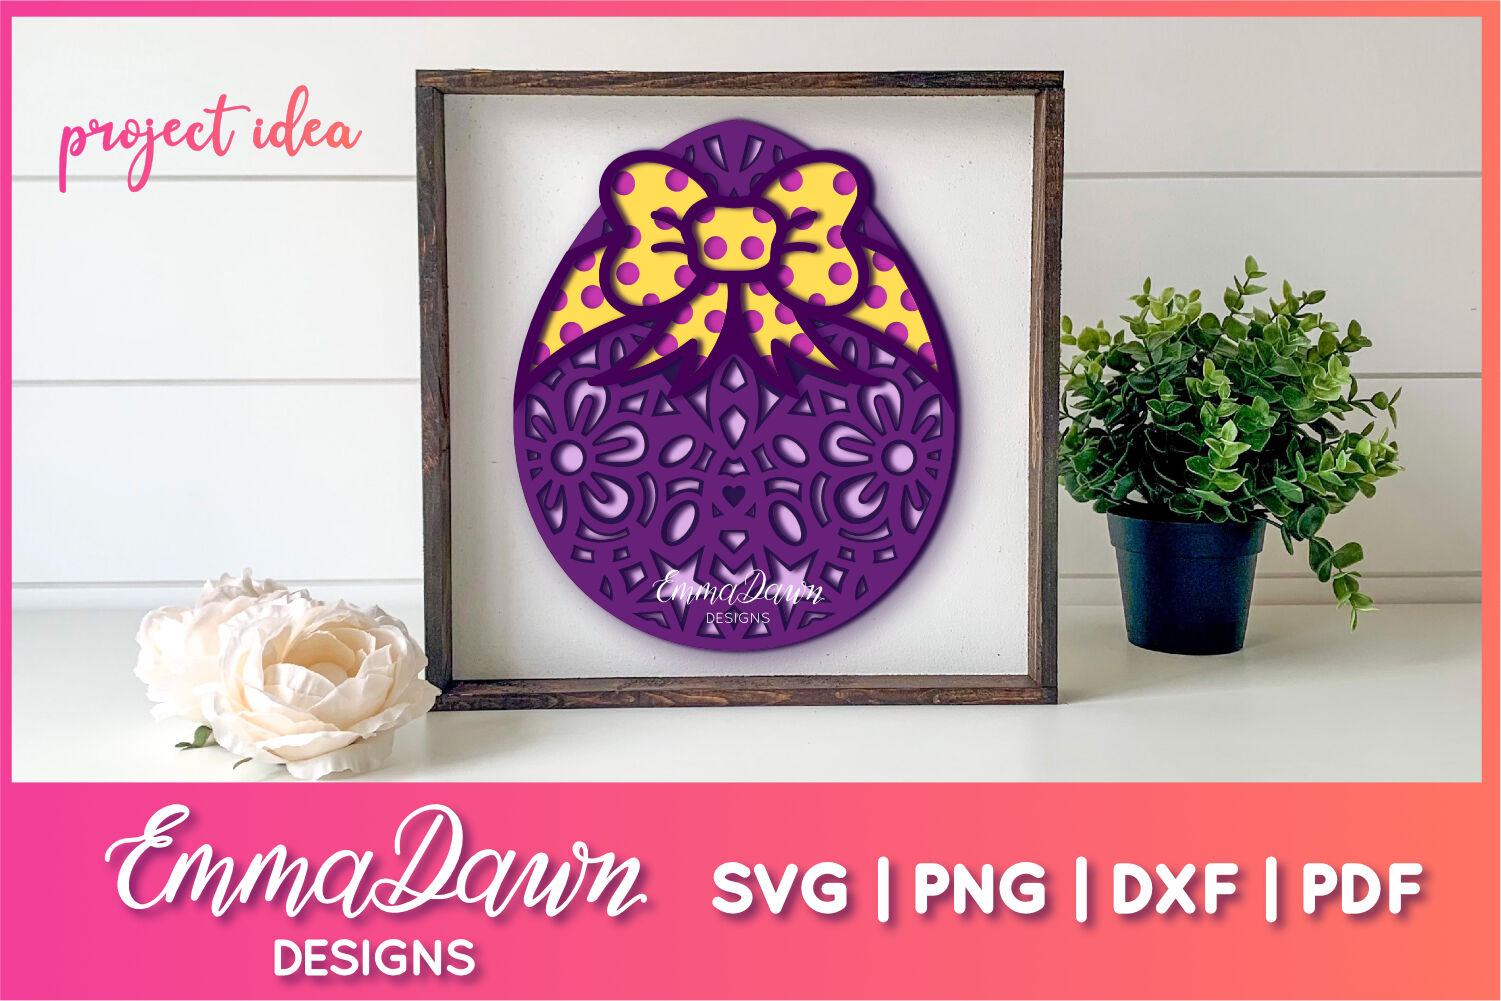 Download 3d Mandala Easter Egg Svg 3d Svg 3d Easter Egg Svg By Emma Dawn Designs Thehungryjpeg Com